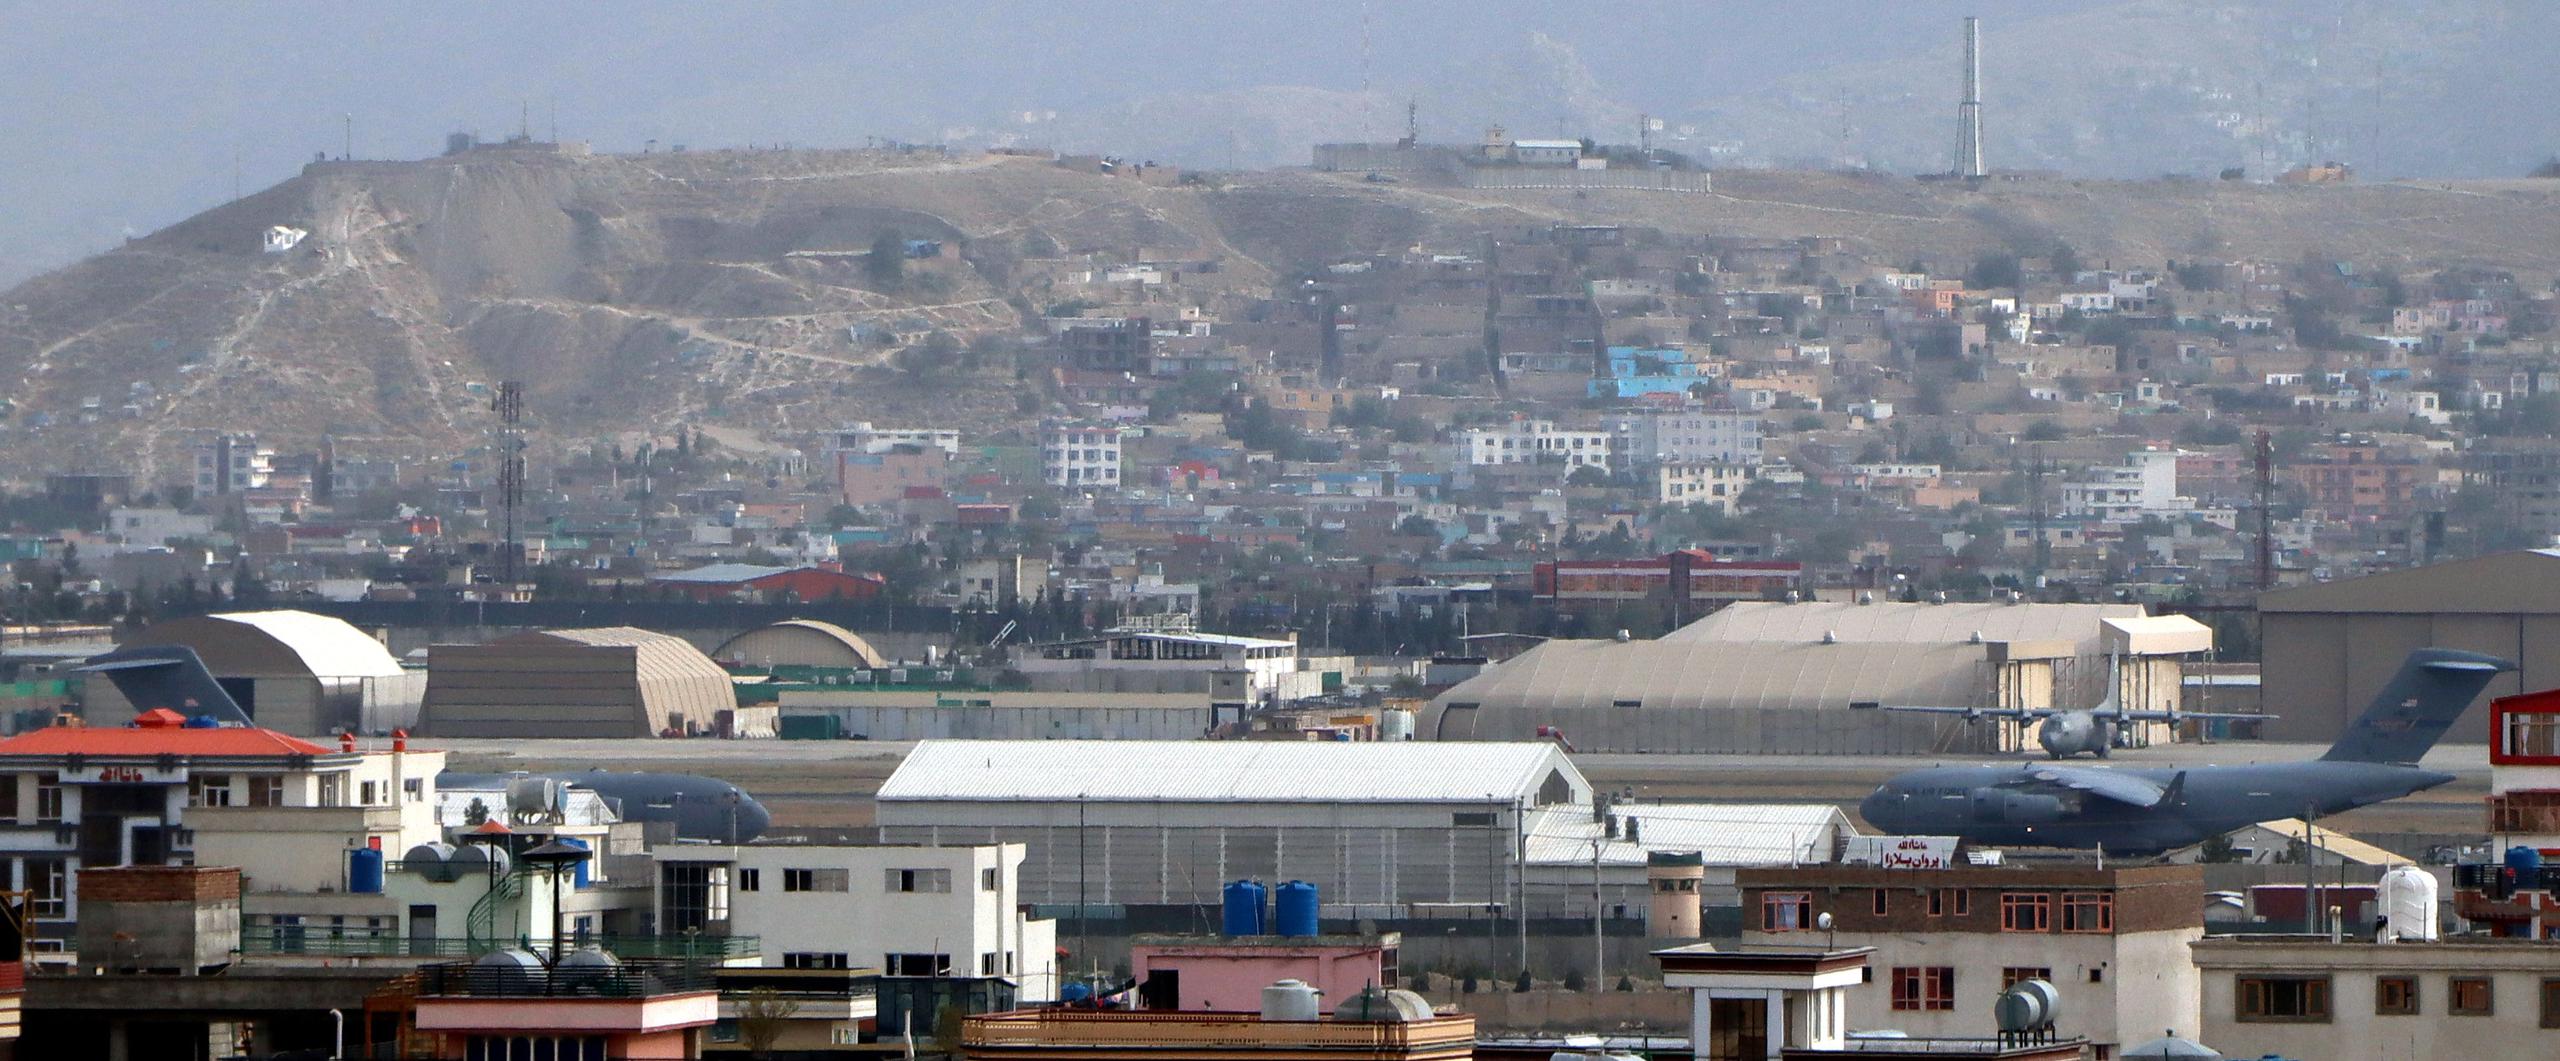 Vista del aeropuerto internacional en Kabul, Afganistán.